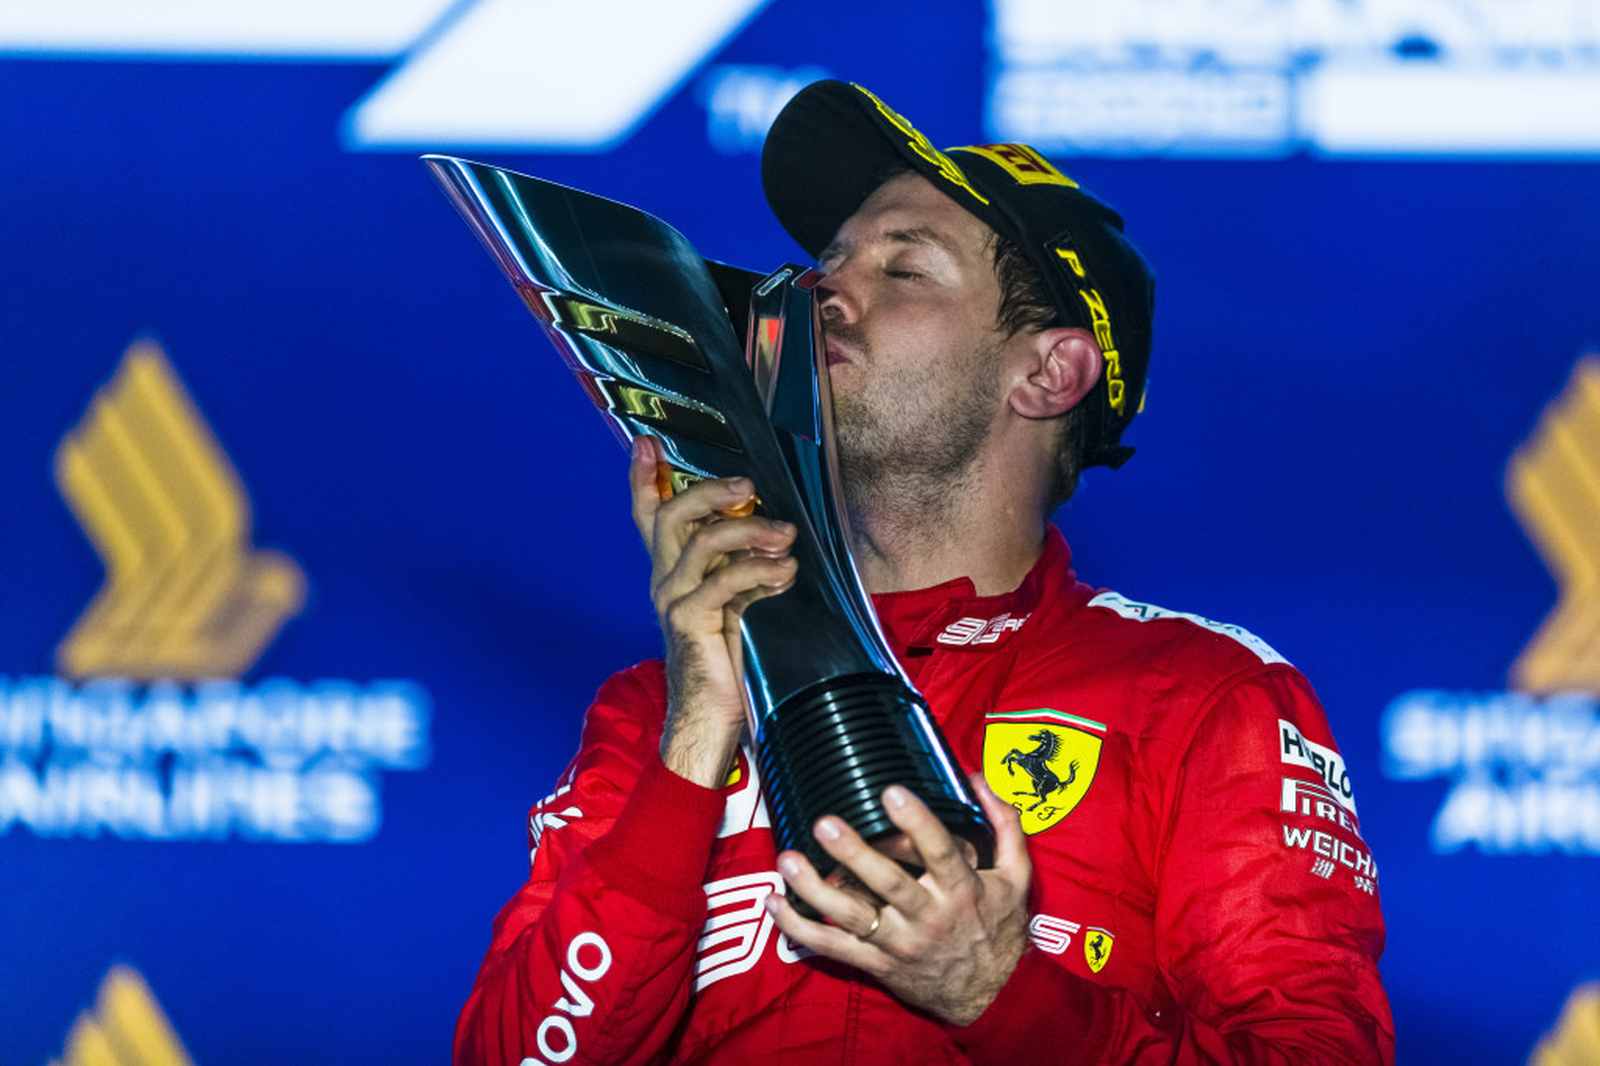 2º (empate entre dois) - Sebastian Vettel - Nacionalidade: Alemão - Quantidade de pódios conquistados com a Ferrari: 55